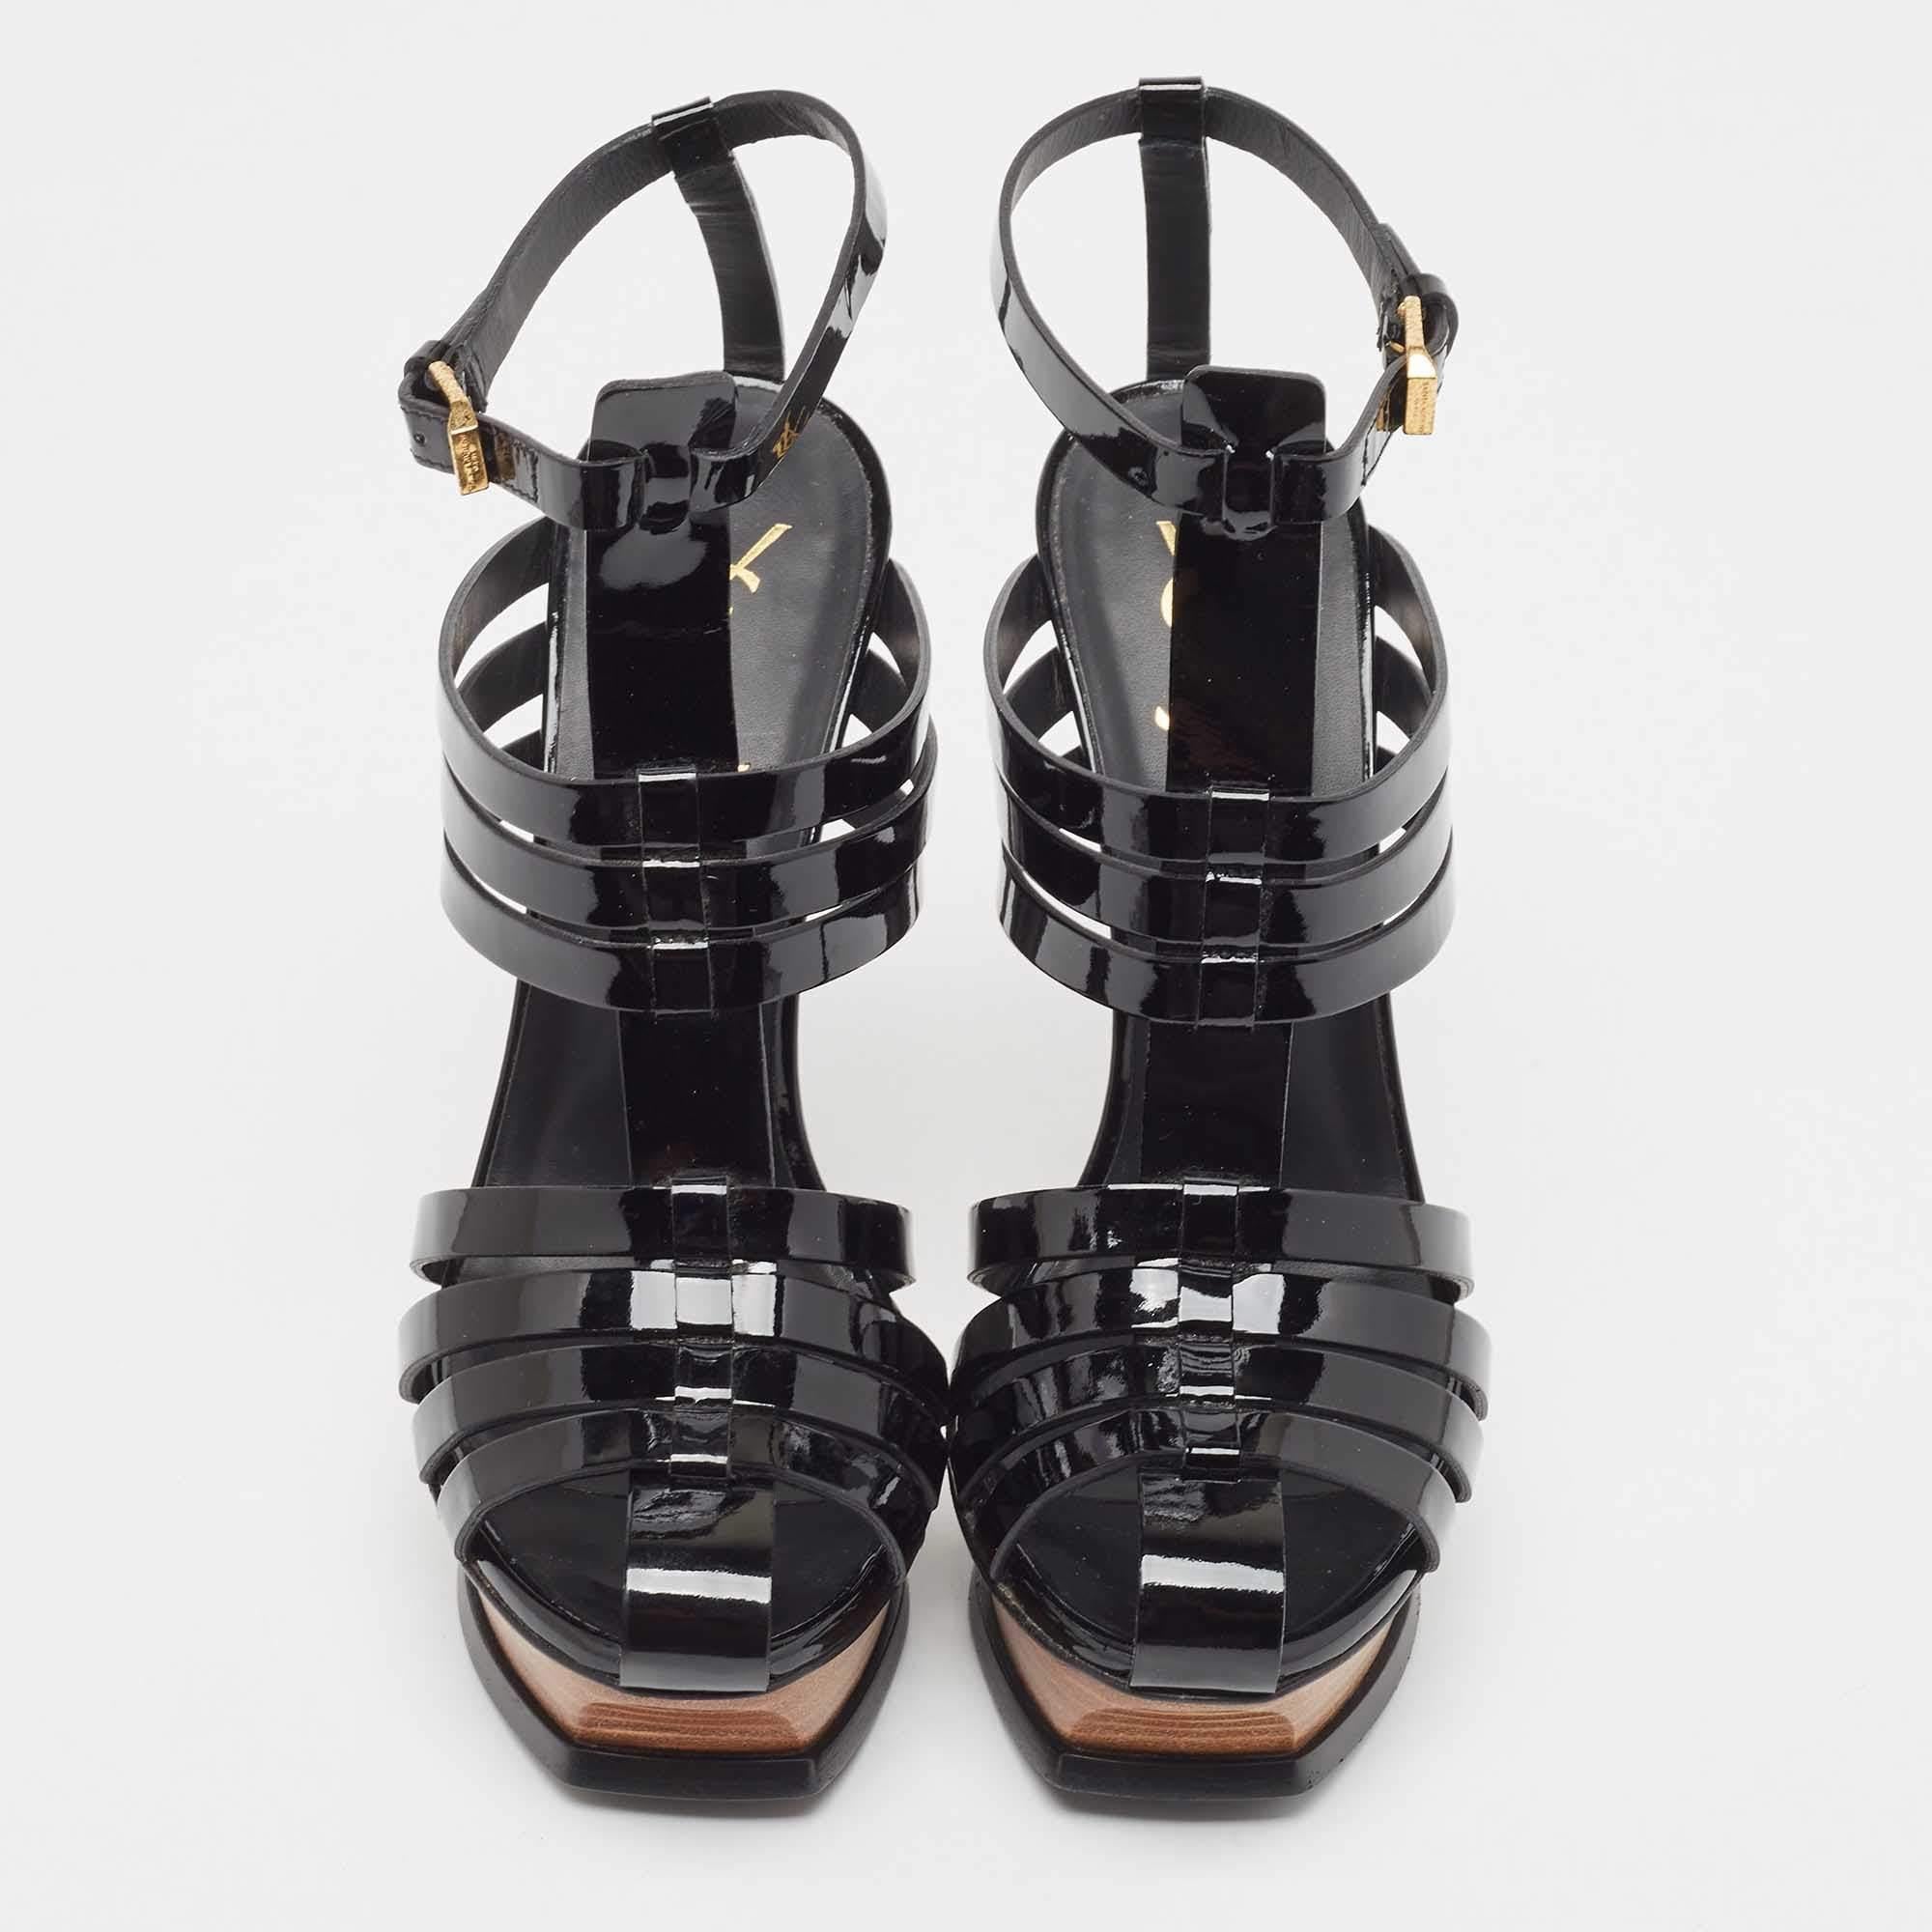 Diese Saint Laurent Sandaletten sind aus Lackleder gefertigt, mit goldfarbener Hardware versehen und auf einem Plateau und 14 cm hohen Absätzen angehoben. Die schwarzen Plateau-Sandalen für Damen sind mit einem Schnallenverschluss an den Knöcheln